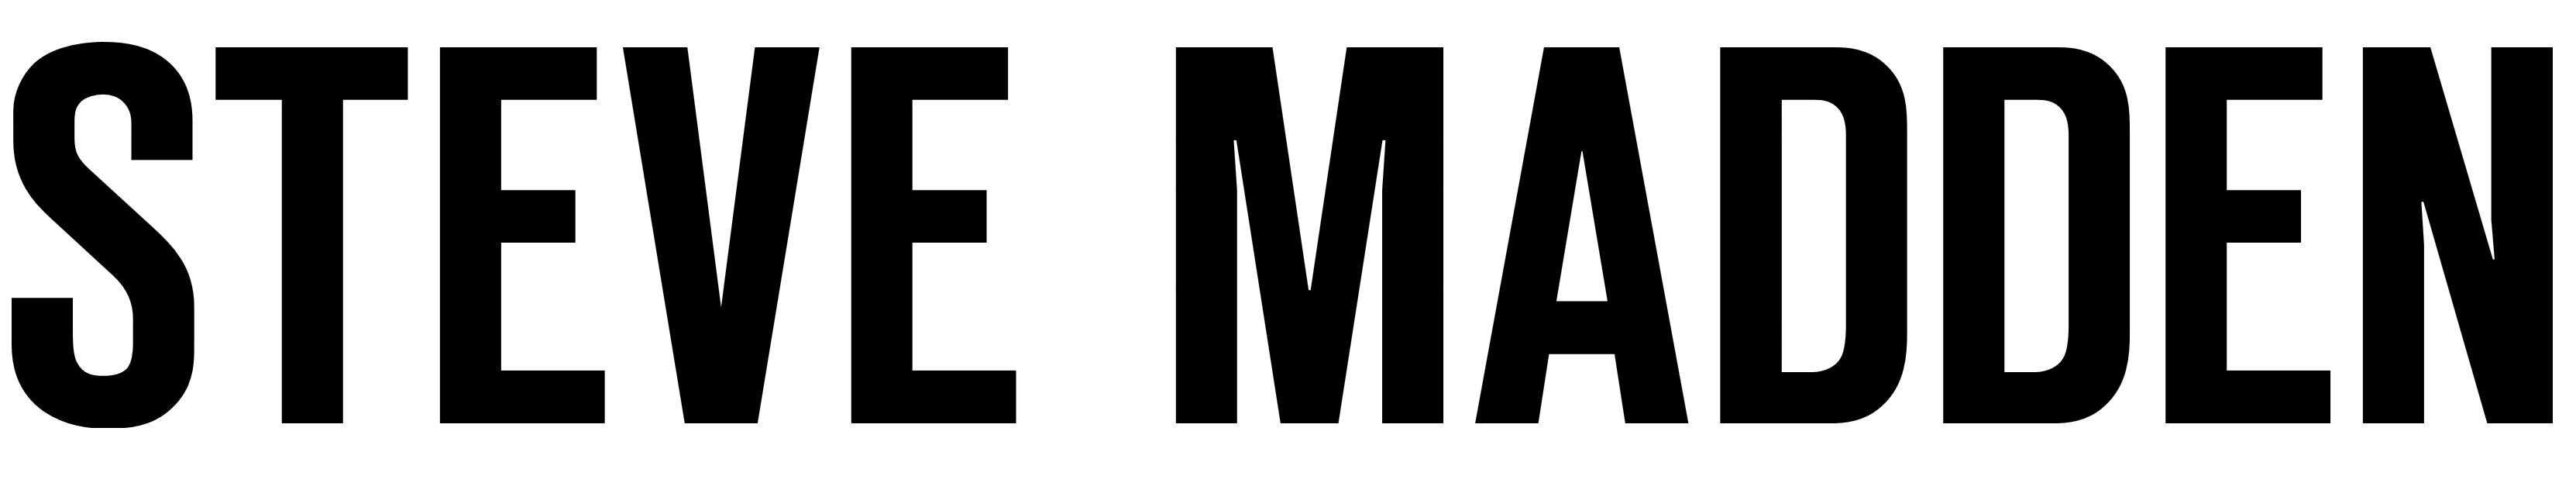 Steve Madden logo, logotype